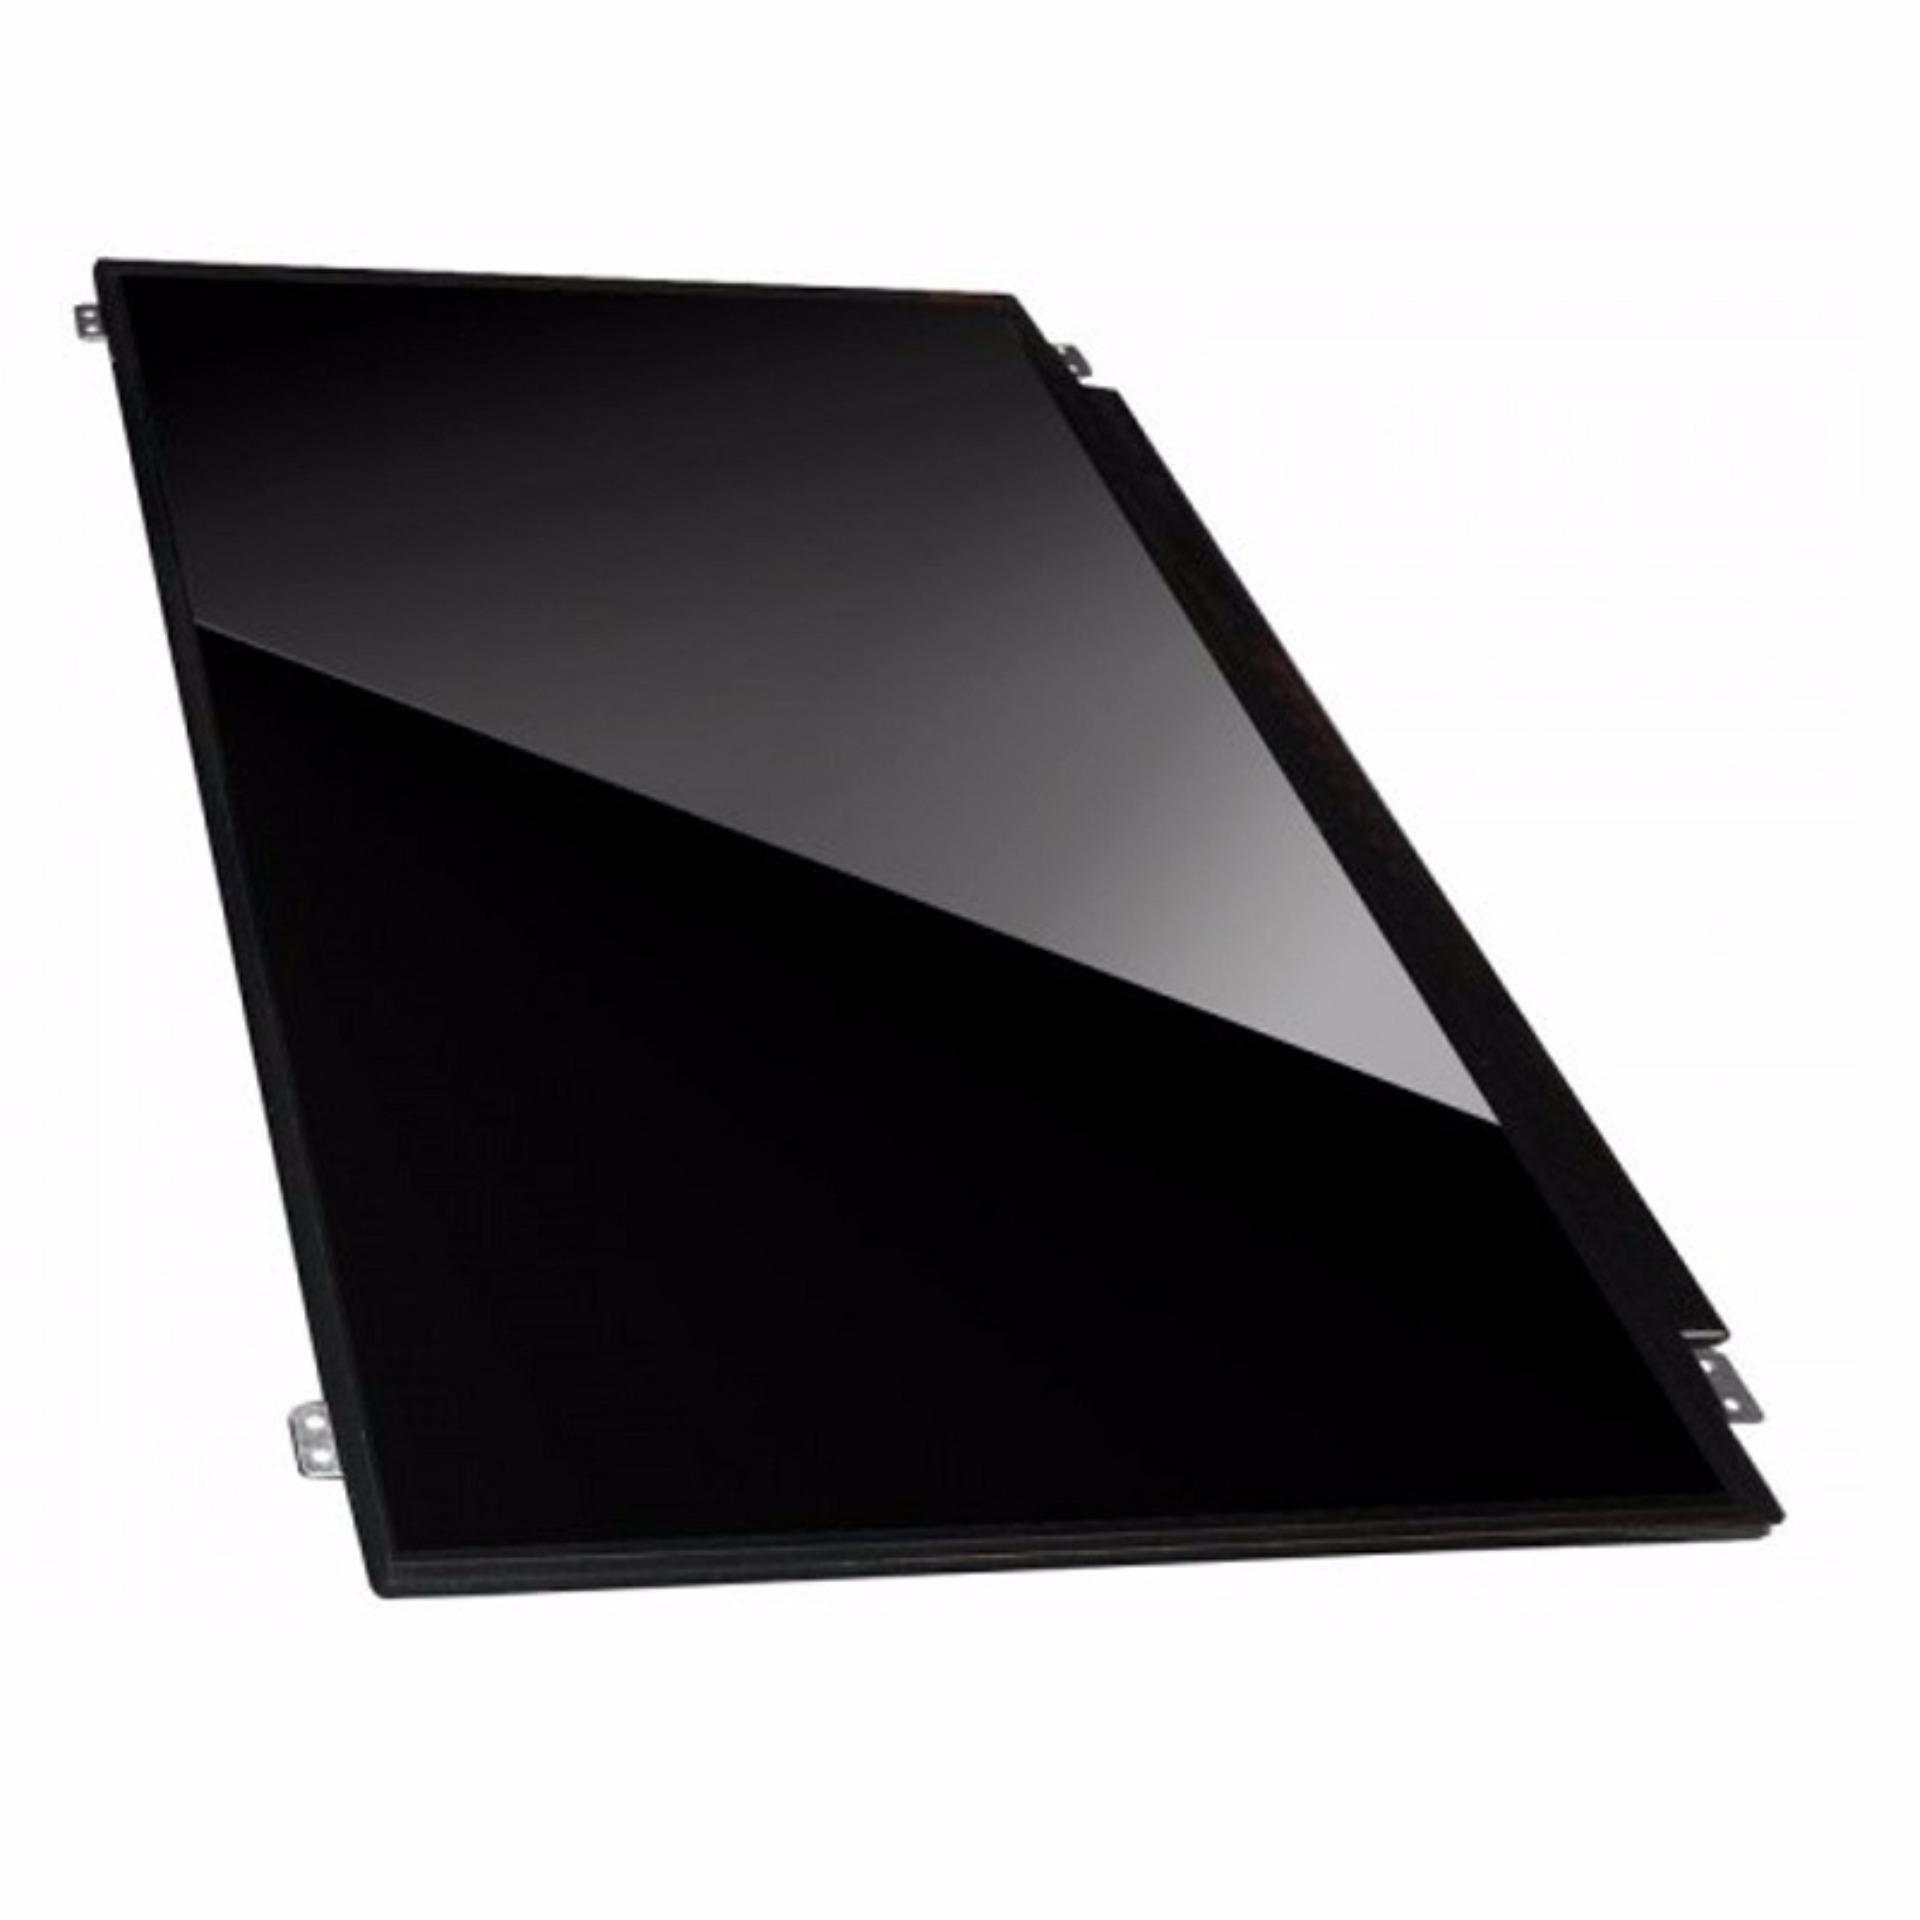 Màn Hình Laptop 15.6 inch LED Slim 30 pin 1366 x 768 Thay Thế Cho Acer, Toshiba, Lenovo, HP, Dell,...